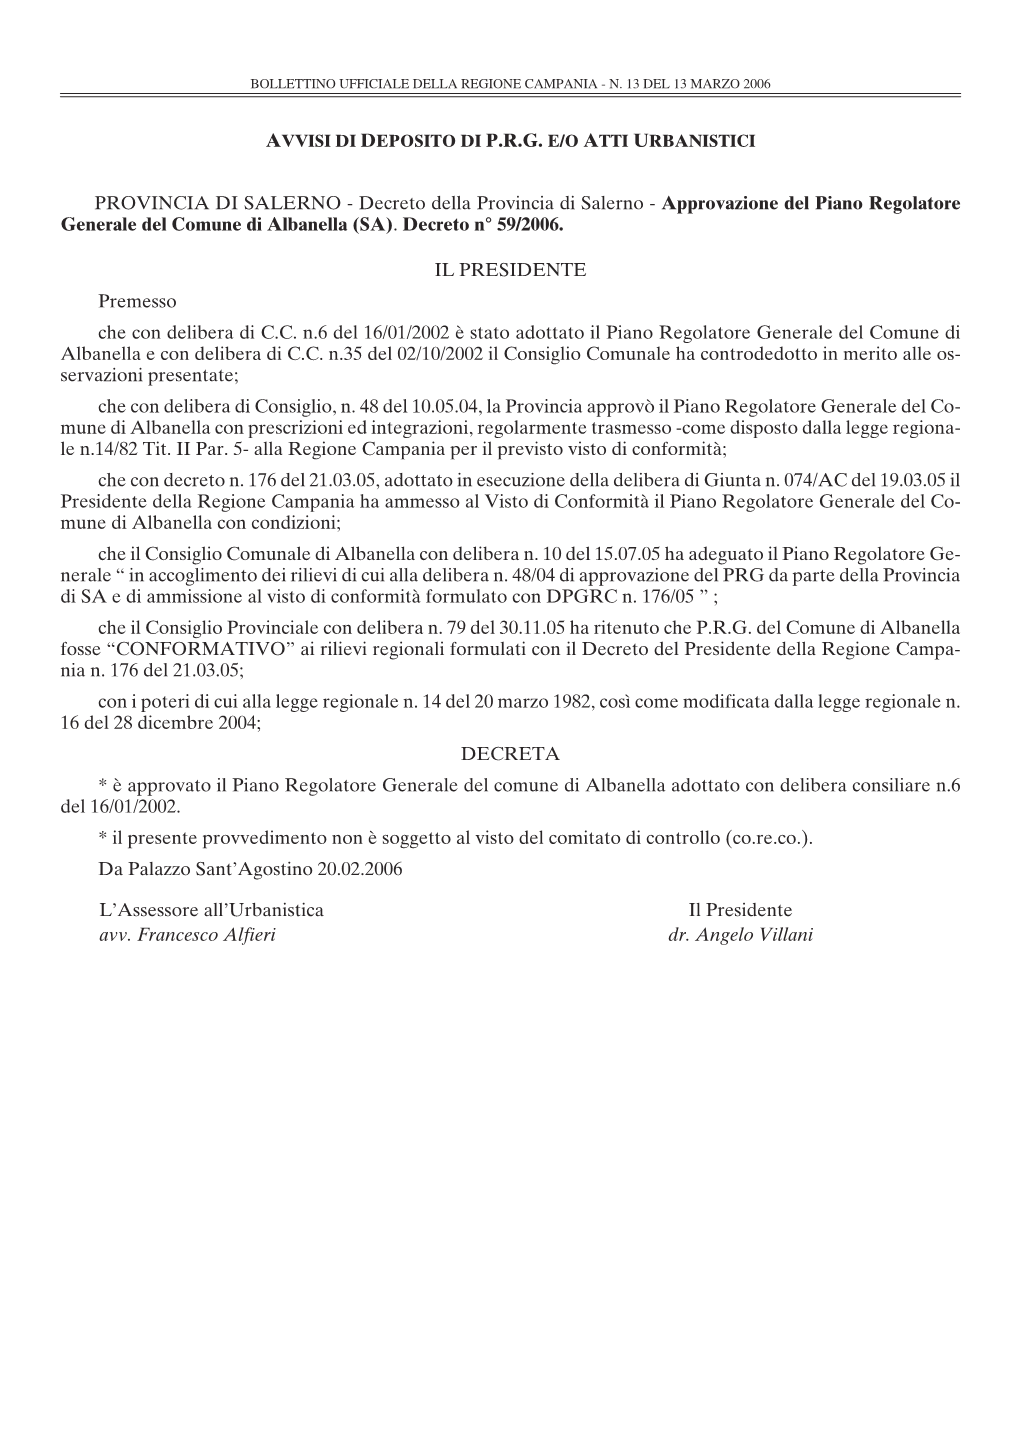 Decreto Della Provincia Di Salerno - Approvazione Del Piano Regolatore Generale Del Comune Di Albanella (SA)